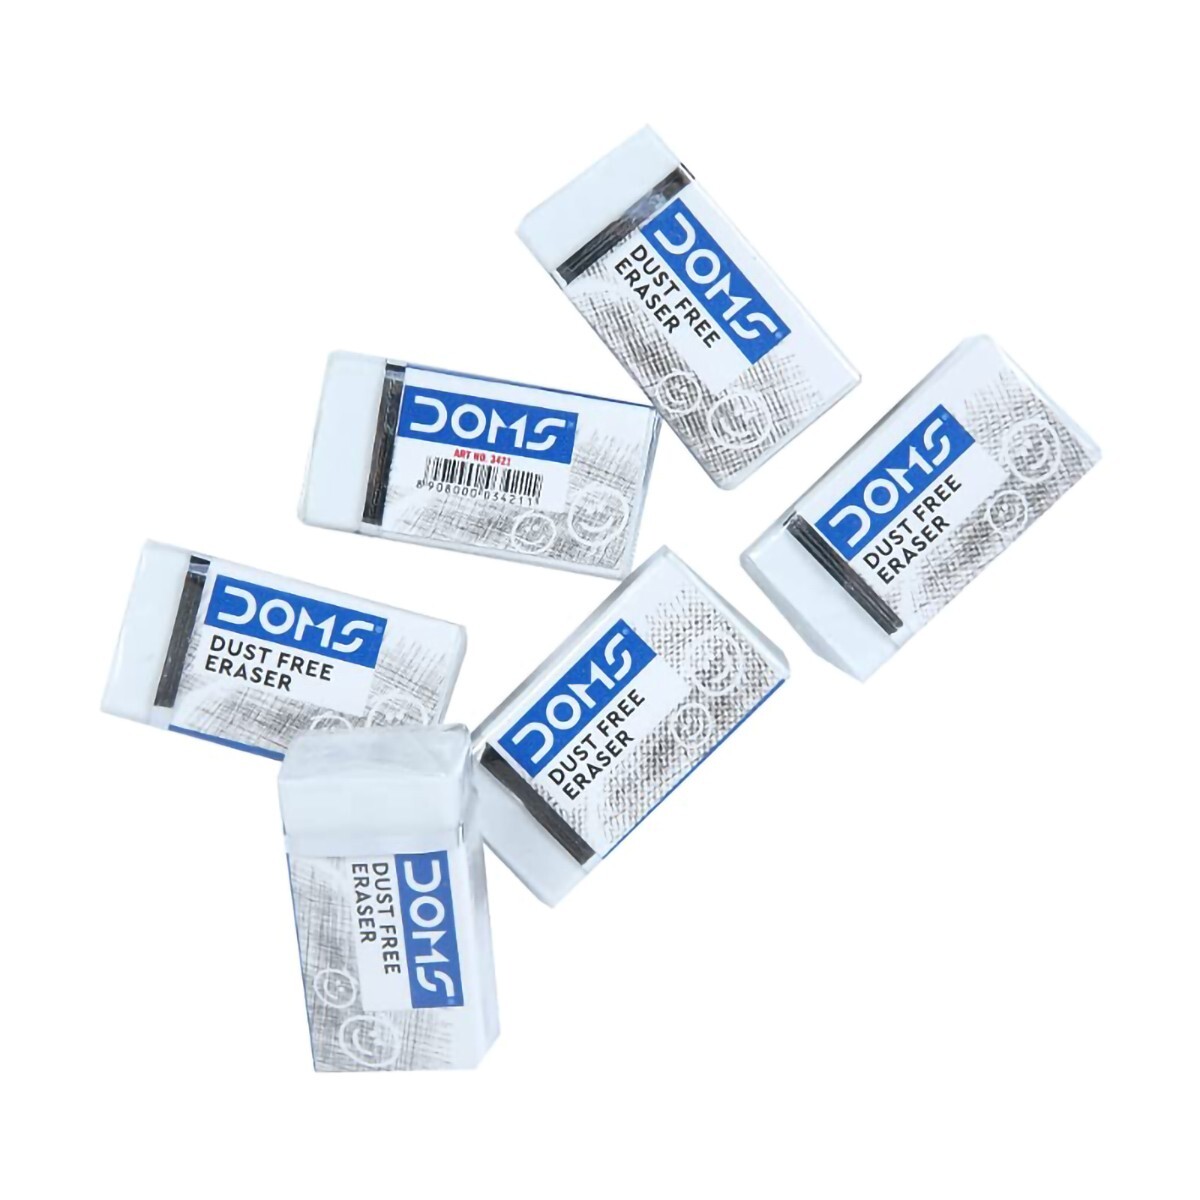 Doms Dust Free Eraser 6s 8207